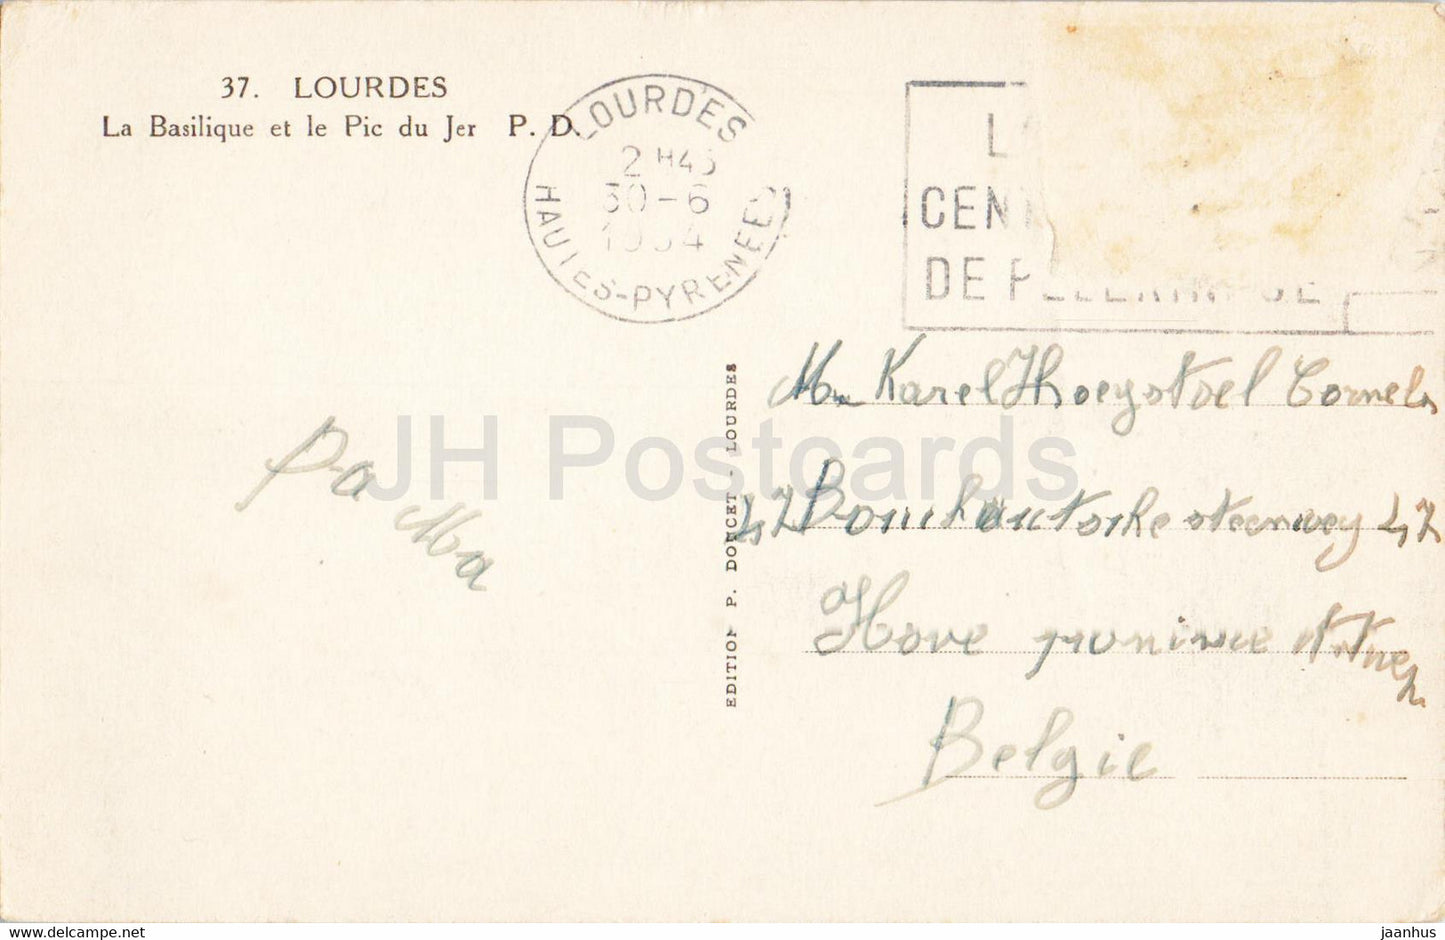 Lourdes - La Basilique et le Pic du Jer  - 37 - old postcard - France - used